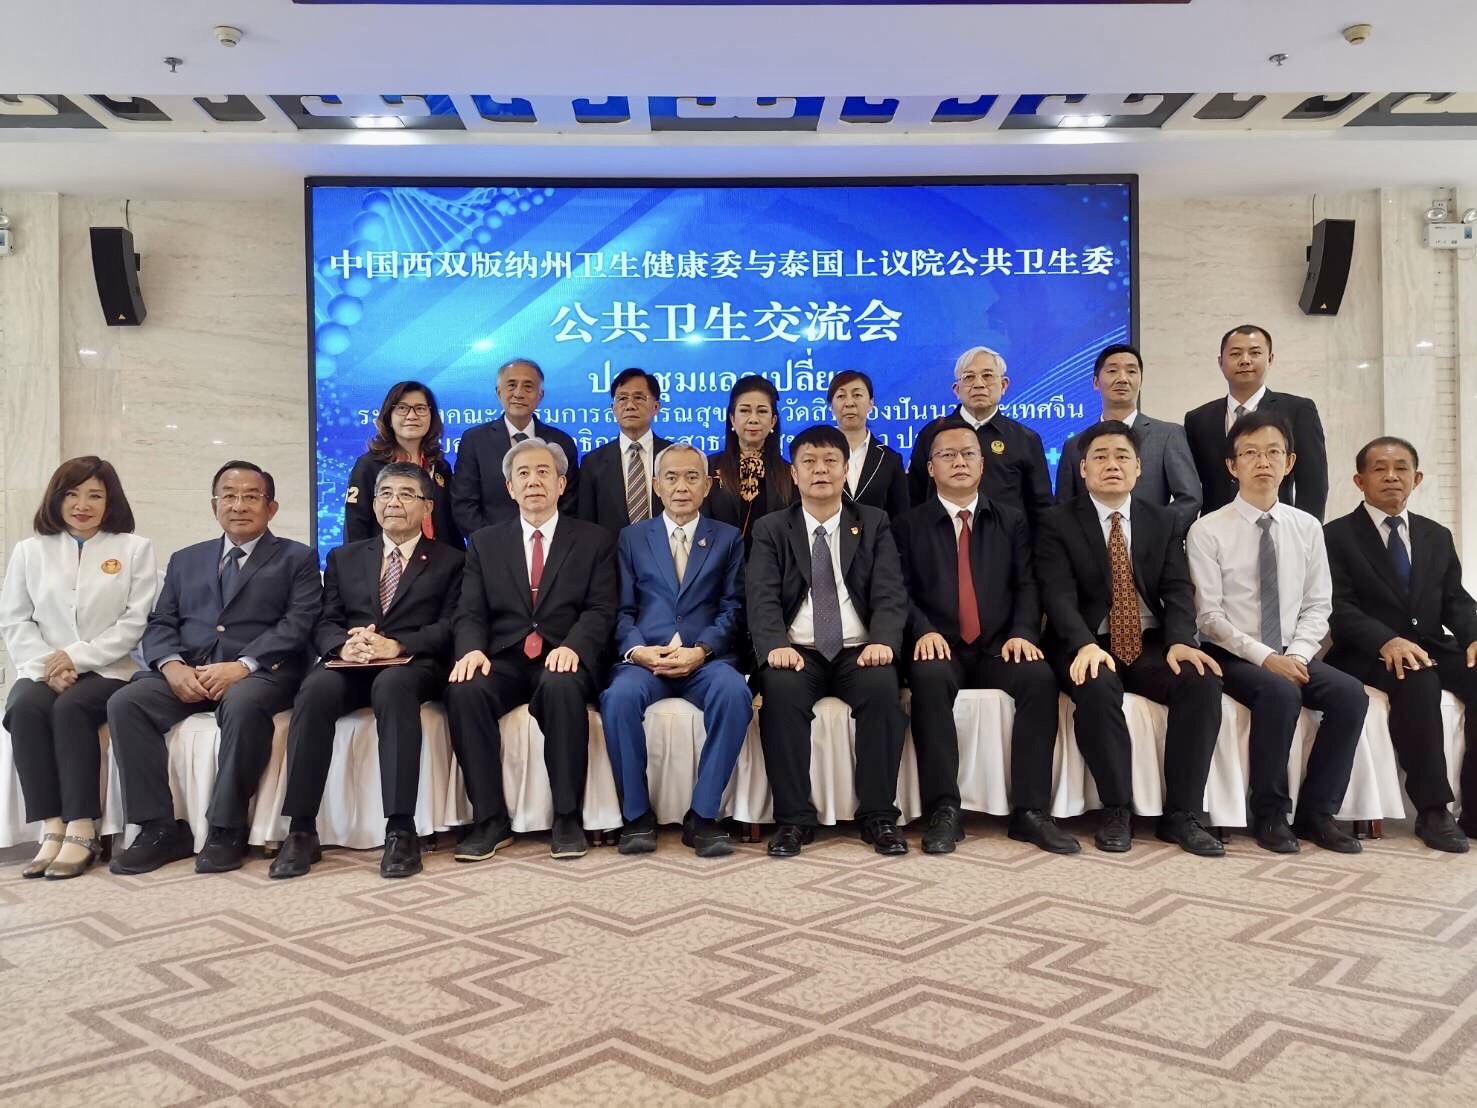 คณะกรรมาธิการการสาธารณสุข วุฒิสภา จัดการประชุมทวิภาคีร่วมกับคณะกรรมการสาธารณสุข สิบสองปันนา สาธารณรัฐประชาชนจีน